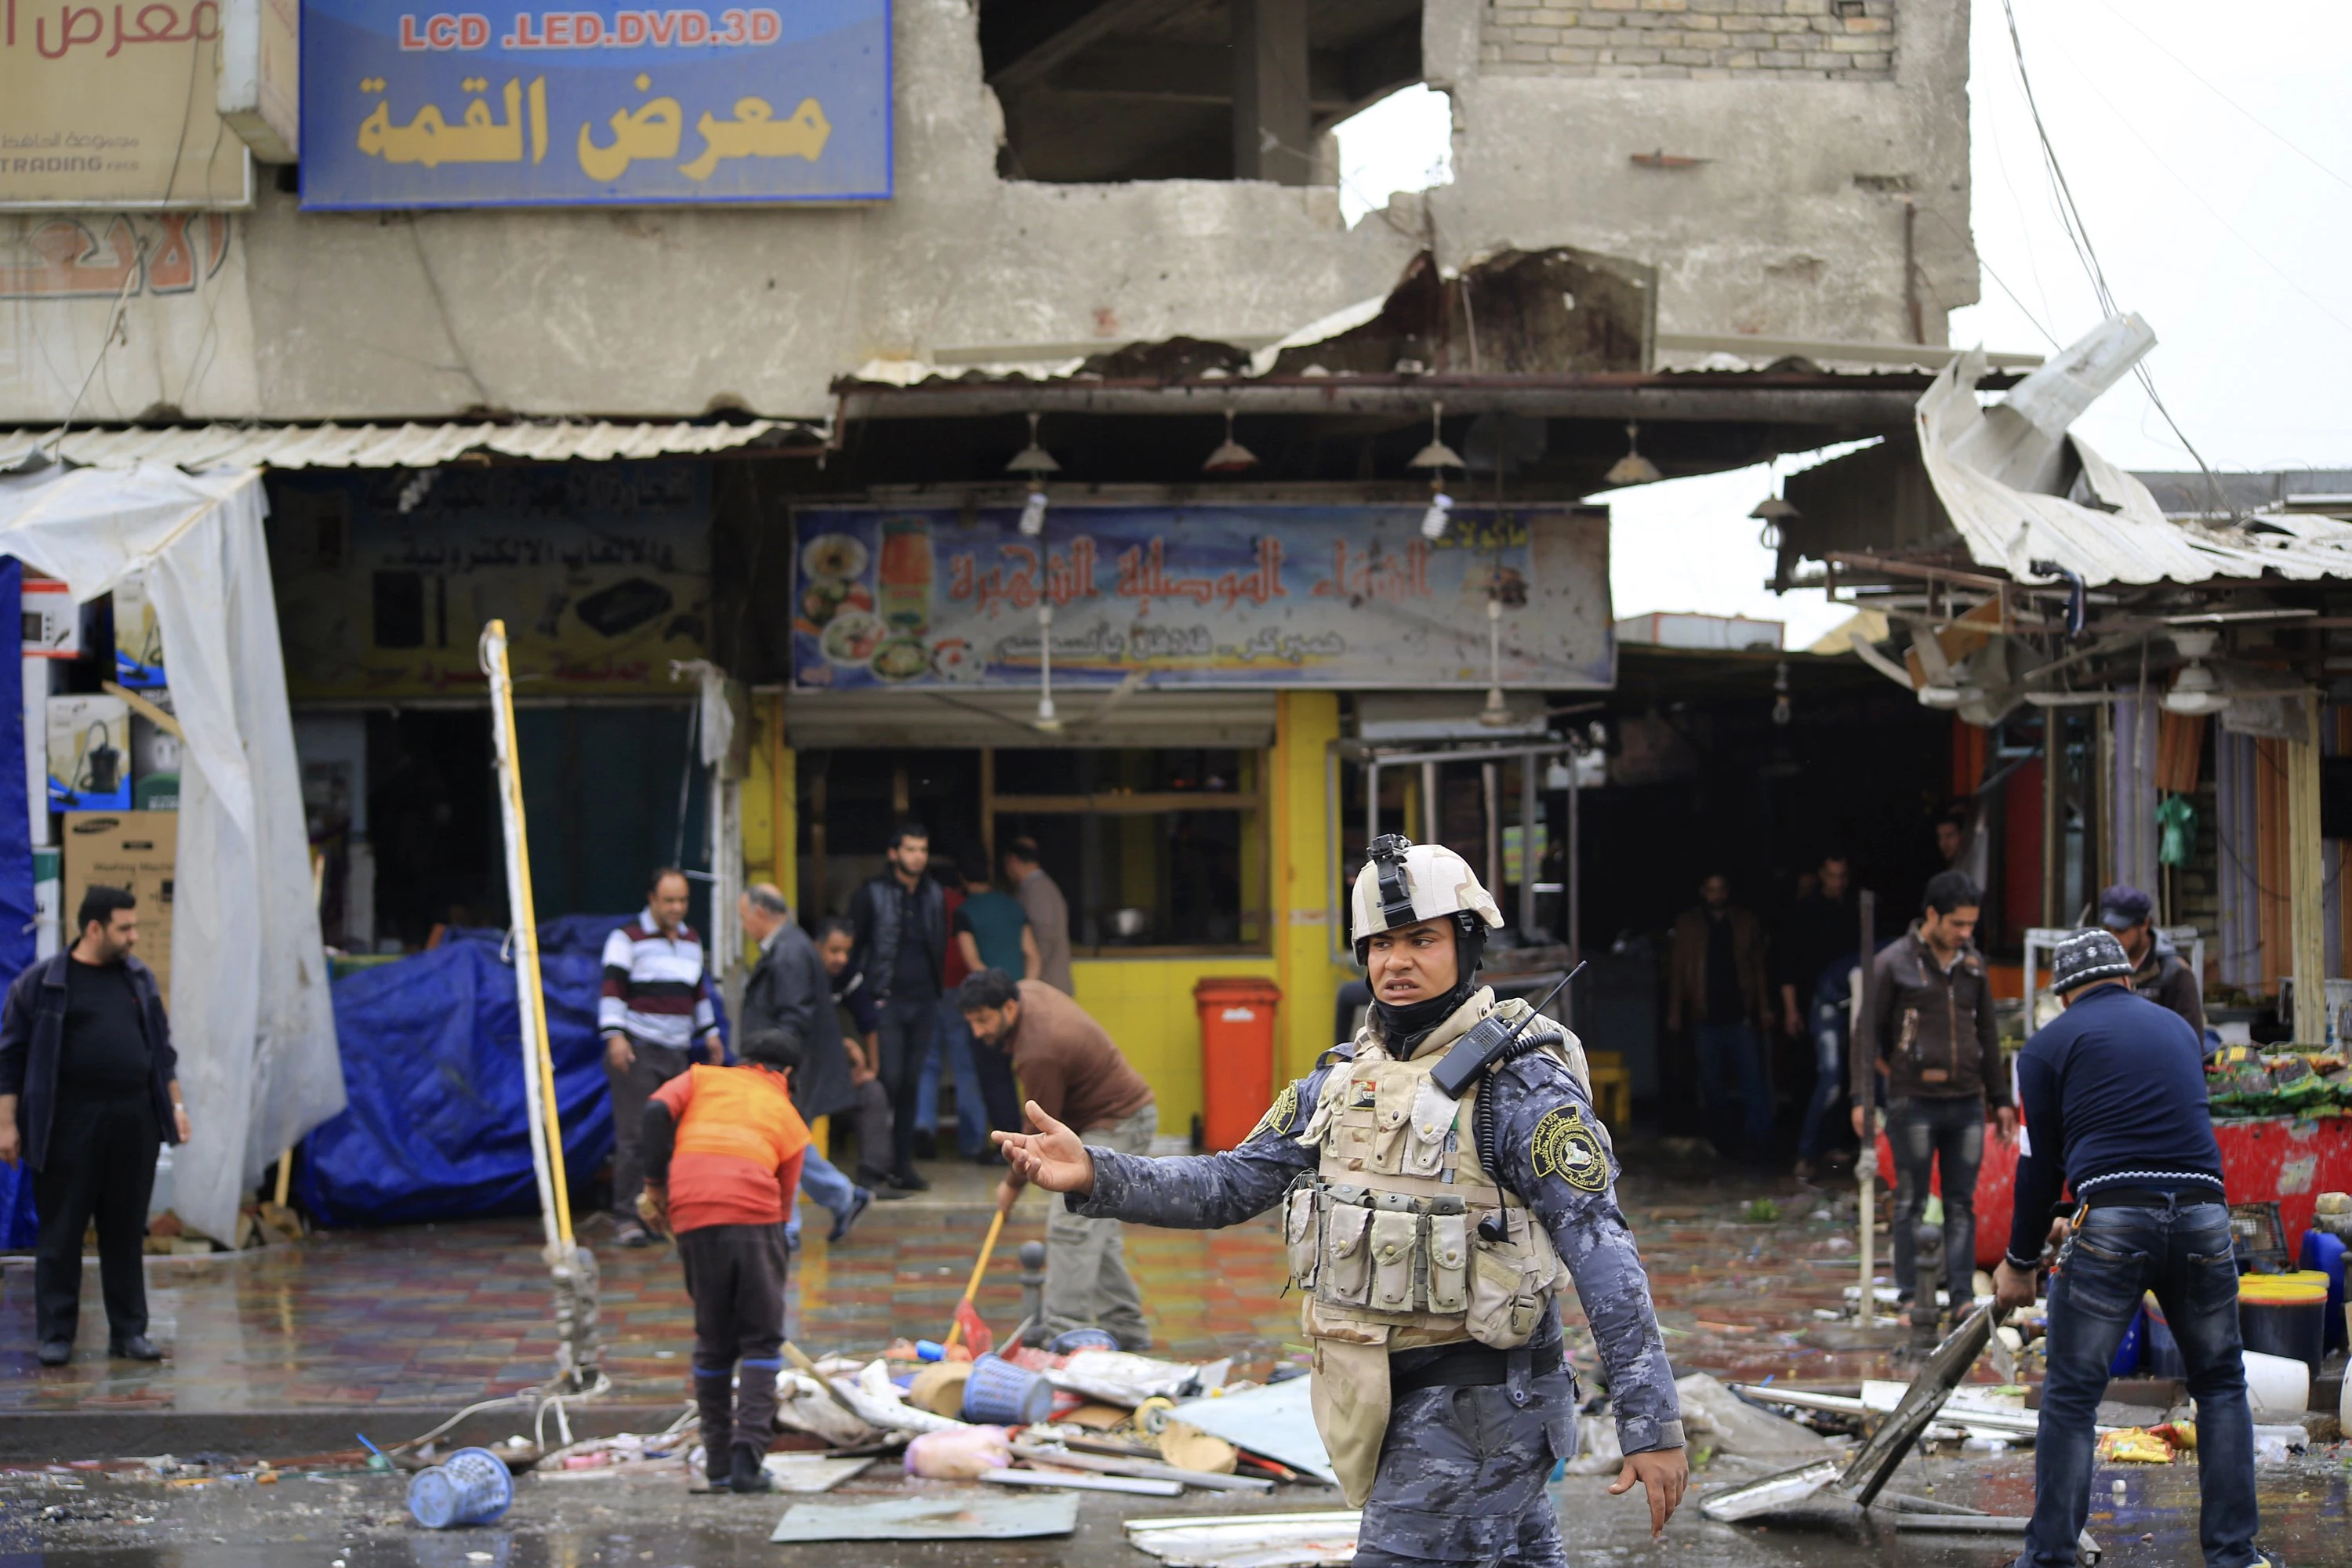 Atentate sângeroase la Bagdad  	Cel puțin 22 de persoane au fost ucise, duminică, în apropierea unei piețe din Sadr, cartier cu populație majoritar șiită al capitalei irakiene. În atacuri au fost rănite alte 55 de persoane. Potrivit unor responsabili irak